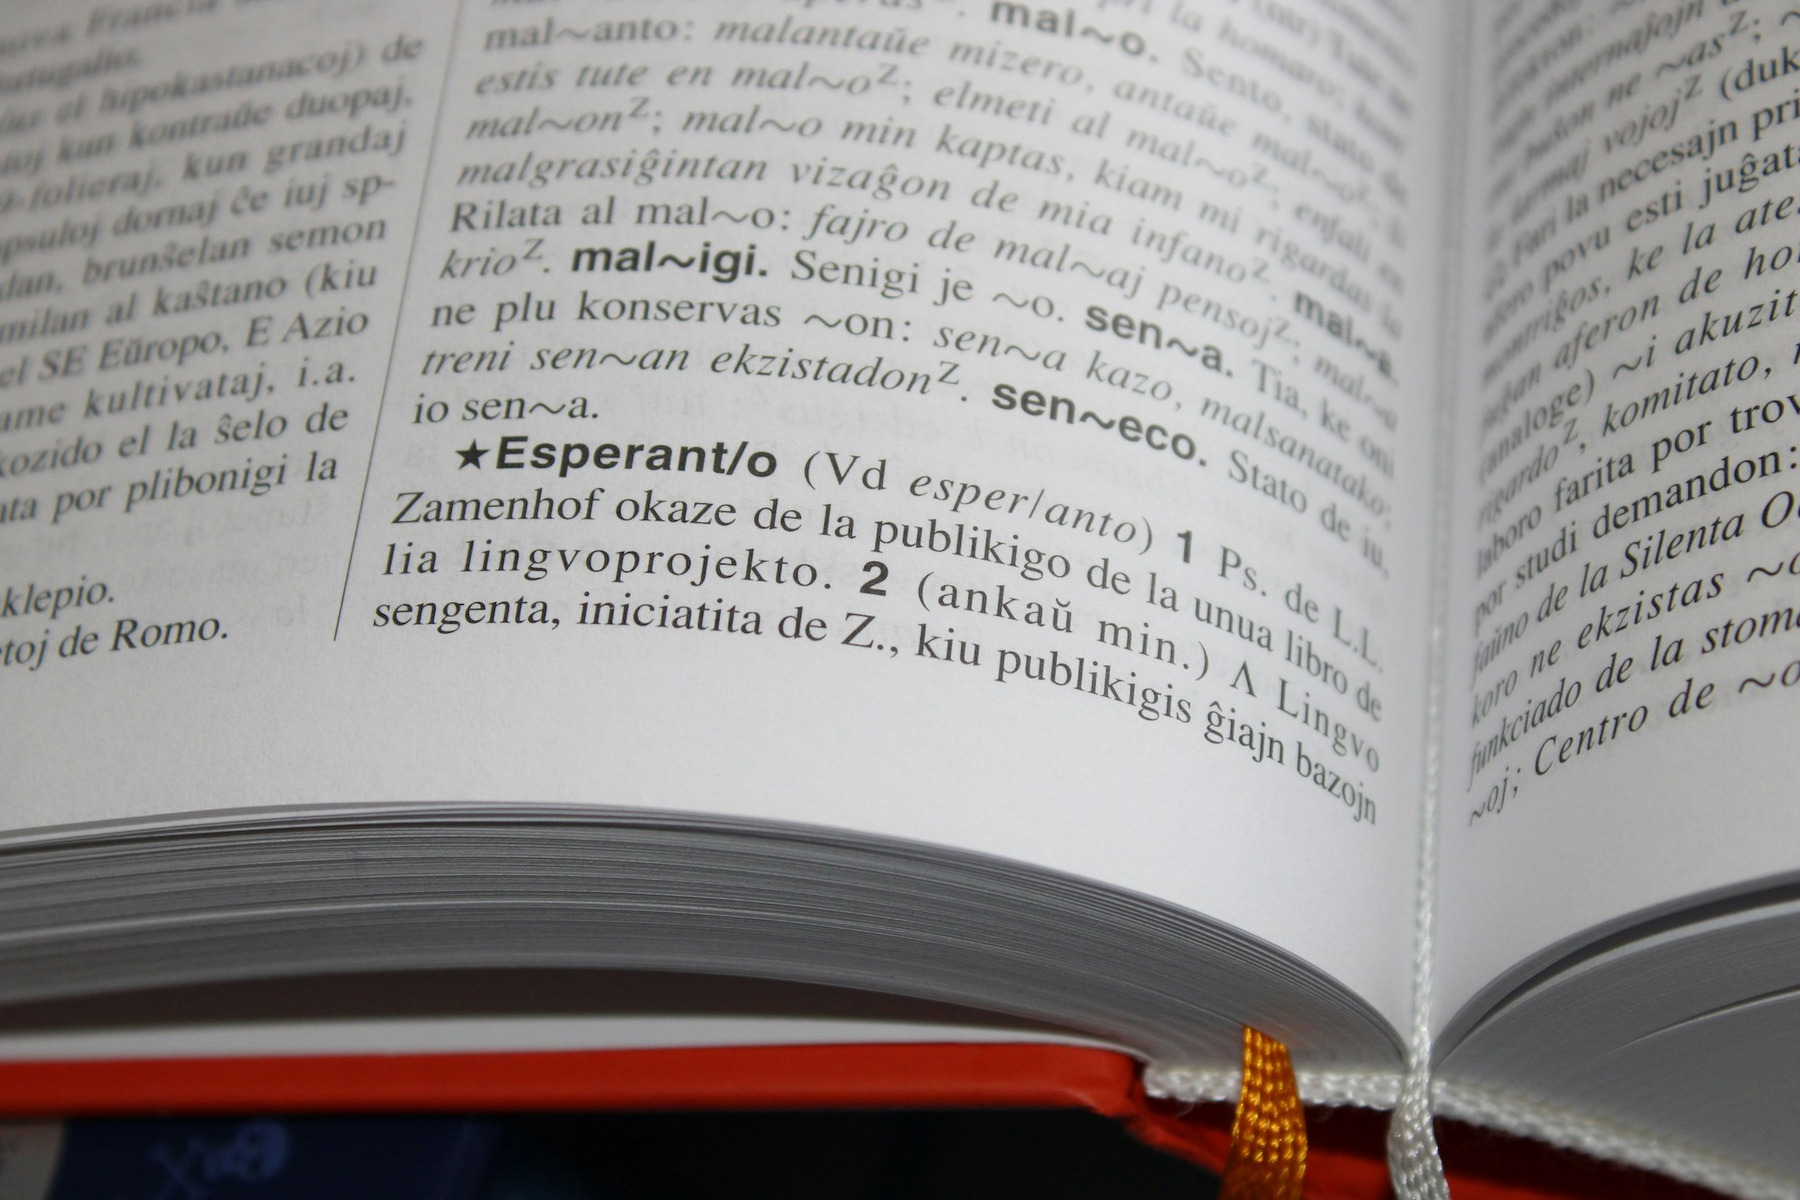 Ein Esperanto-Wörterbuch mit aufgeschlagenem Lemma „Esperanto“